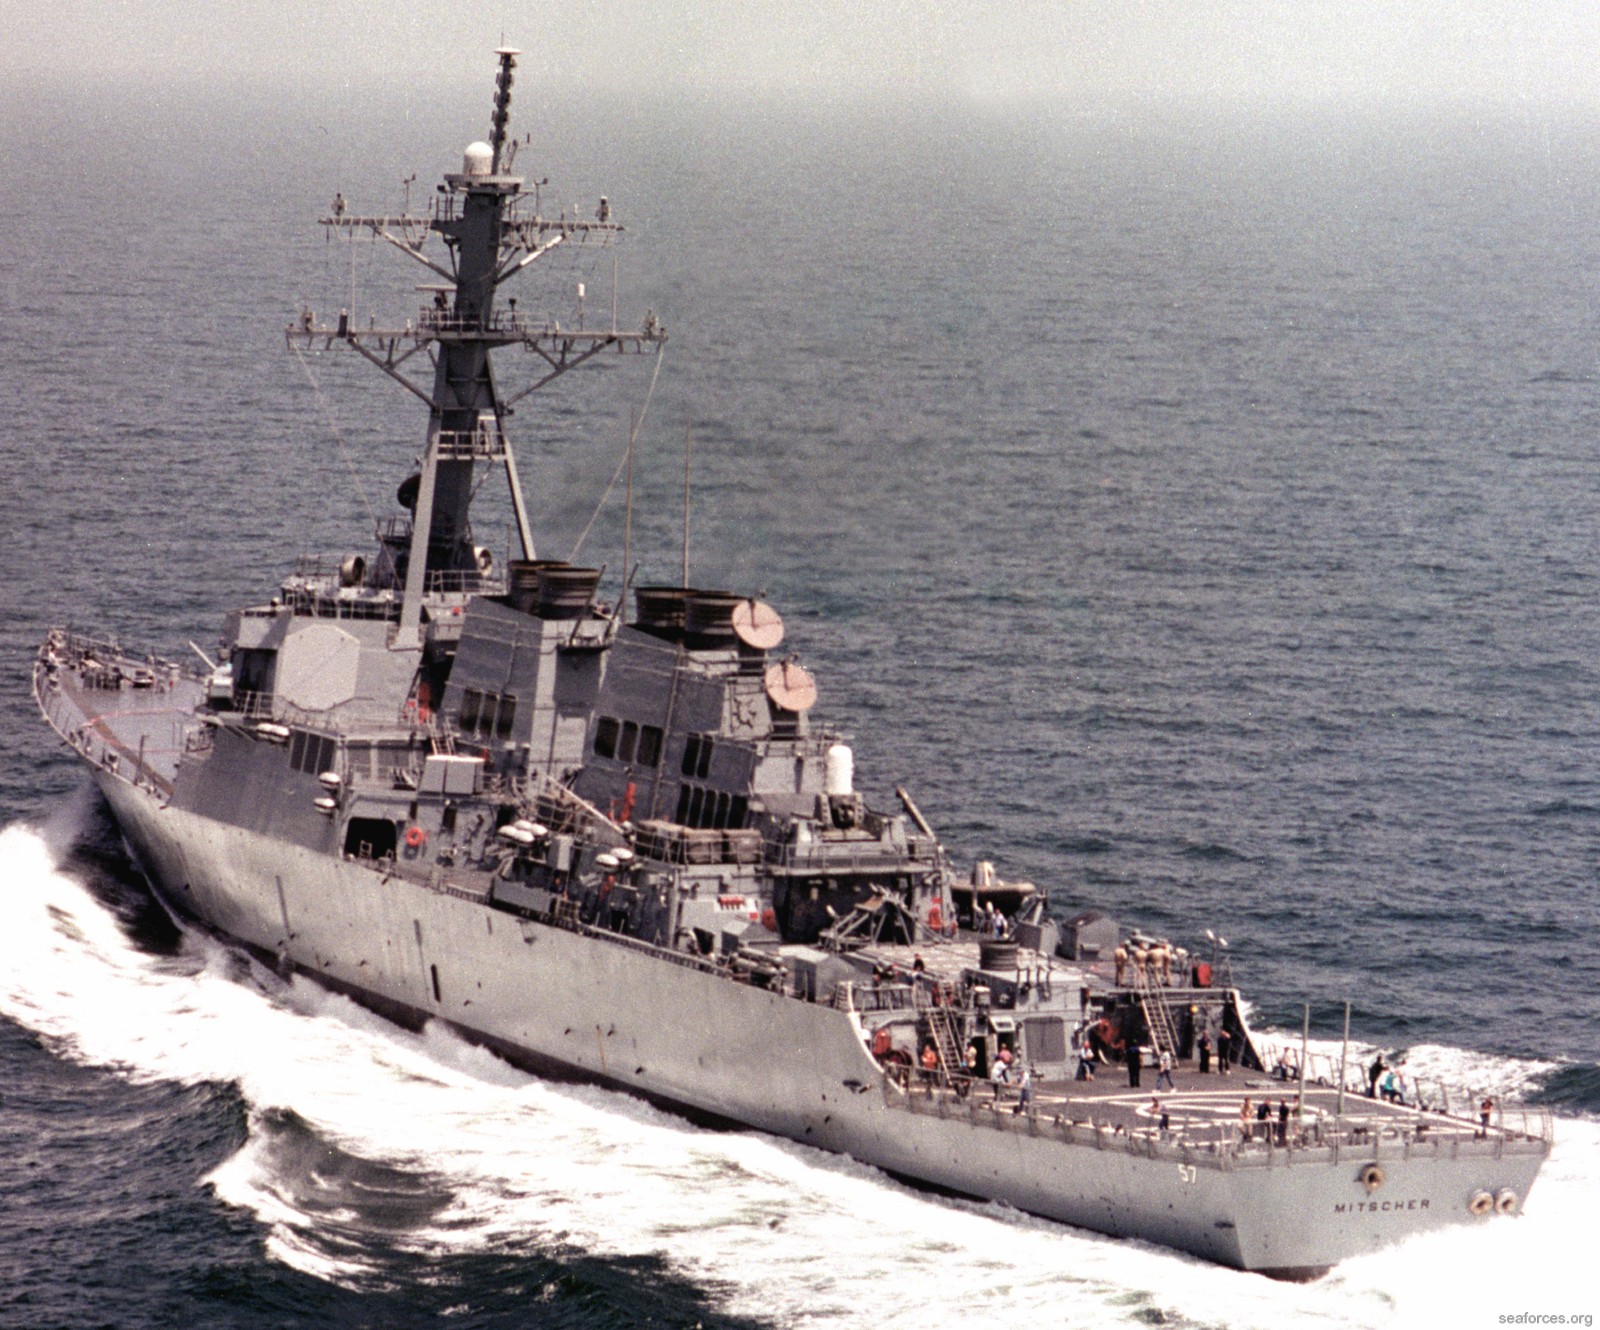 ddg-57 uss mitscher guided missile destroyer us navy 86 trials ingalls shipbuilding